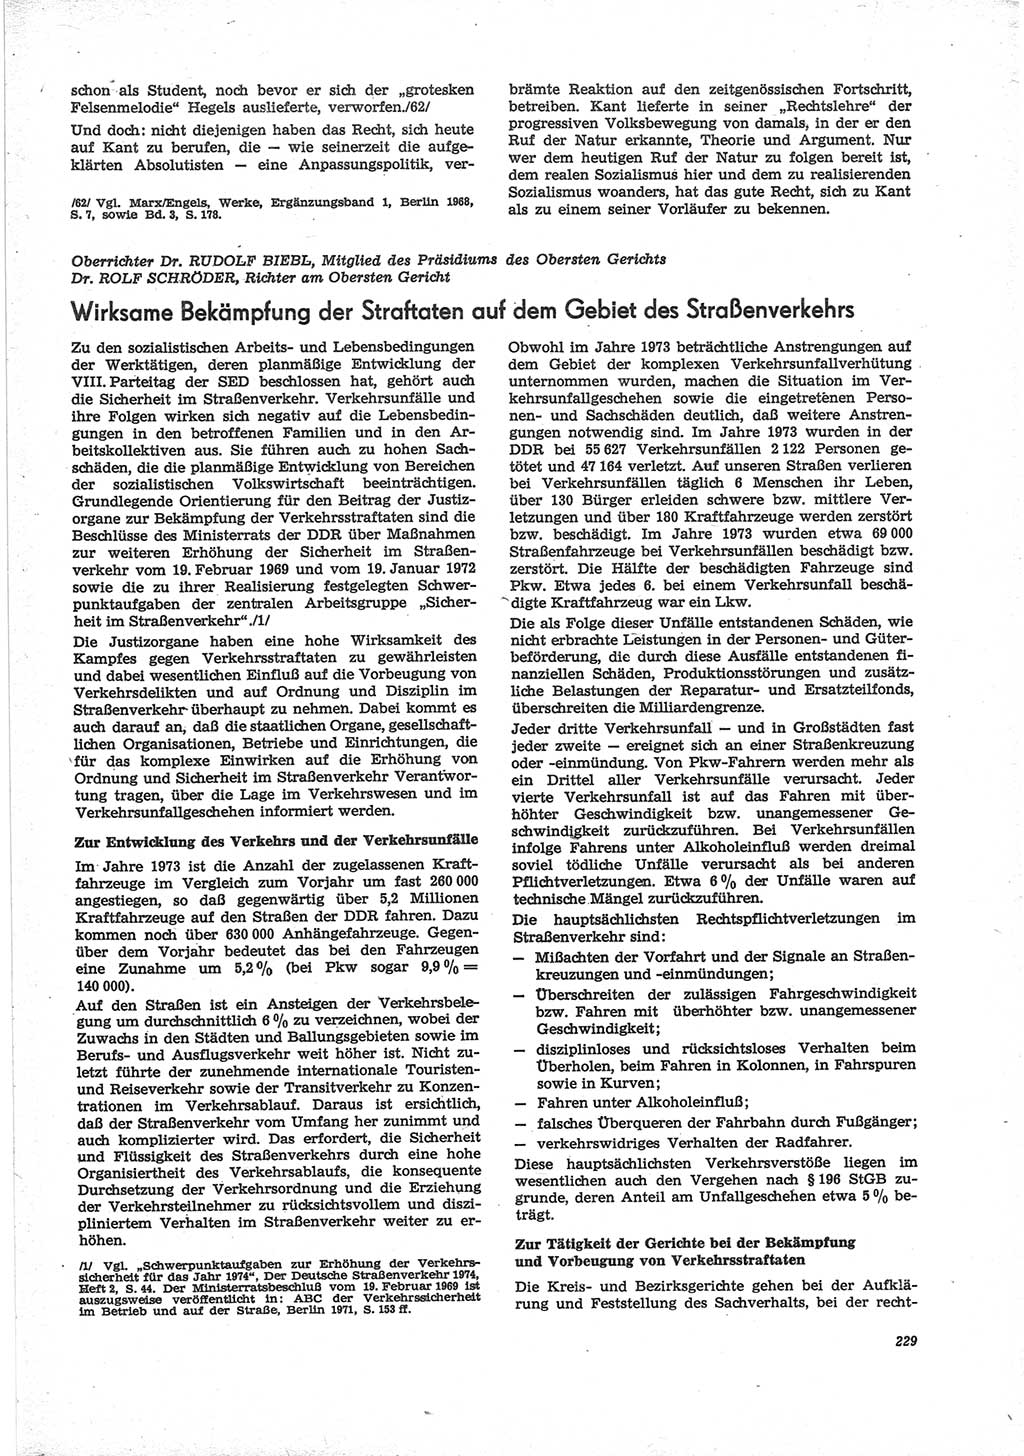 Neue Justiz (NJ), Zeitschrift für Recht und Rechtswissenschaft [Deutsche Demokratische Republik (DDR)], 28. Jahrgang 1974, Seite 229 (NJ DDR 1974, S. 229)